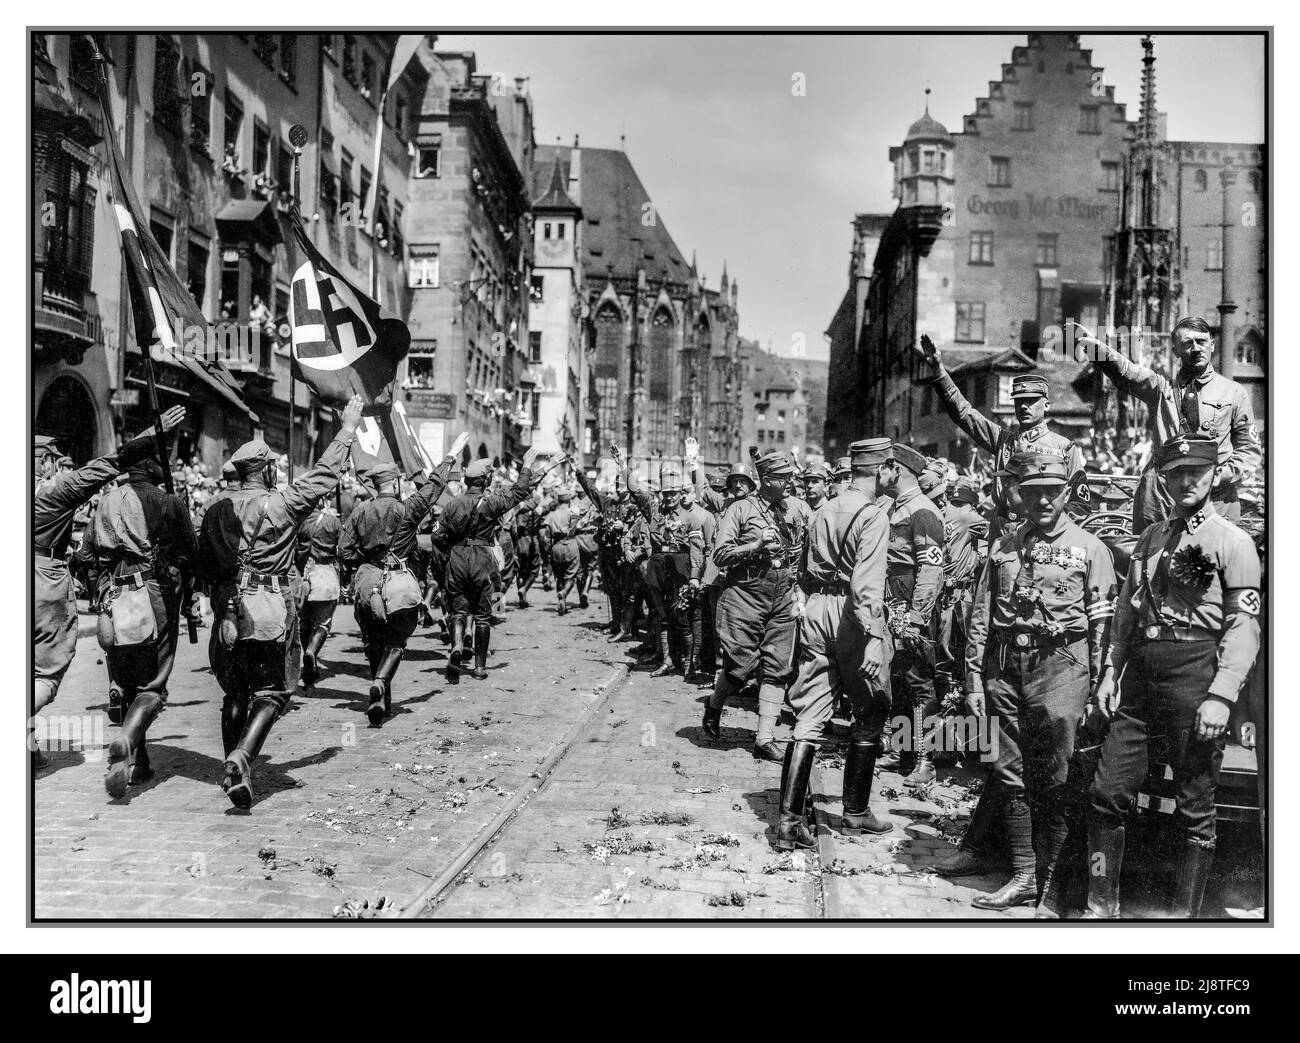 1920s Adolf Hitler (Nazi-Parteiführer), Franz Pfeffer von Salomon (SA-Führer), etc. Auf der Nürnberger Kundgebung 1929, dem NSDAP-Kongress, der am 1. Und 4. August in Nürnberg stattfand. Paraden von Mitgliedern der STURMBLEITUNG SA, Nazi-Grüße, Parteiflaggen mit Nazi-Hakenkreuz, Braunhemd-Uniformen, Stockfoto